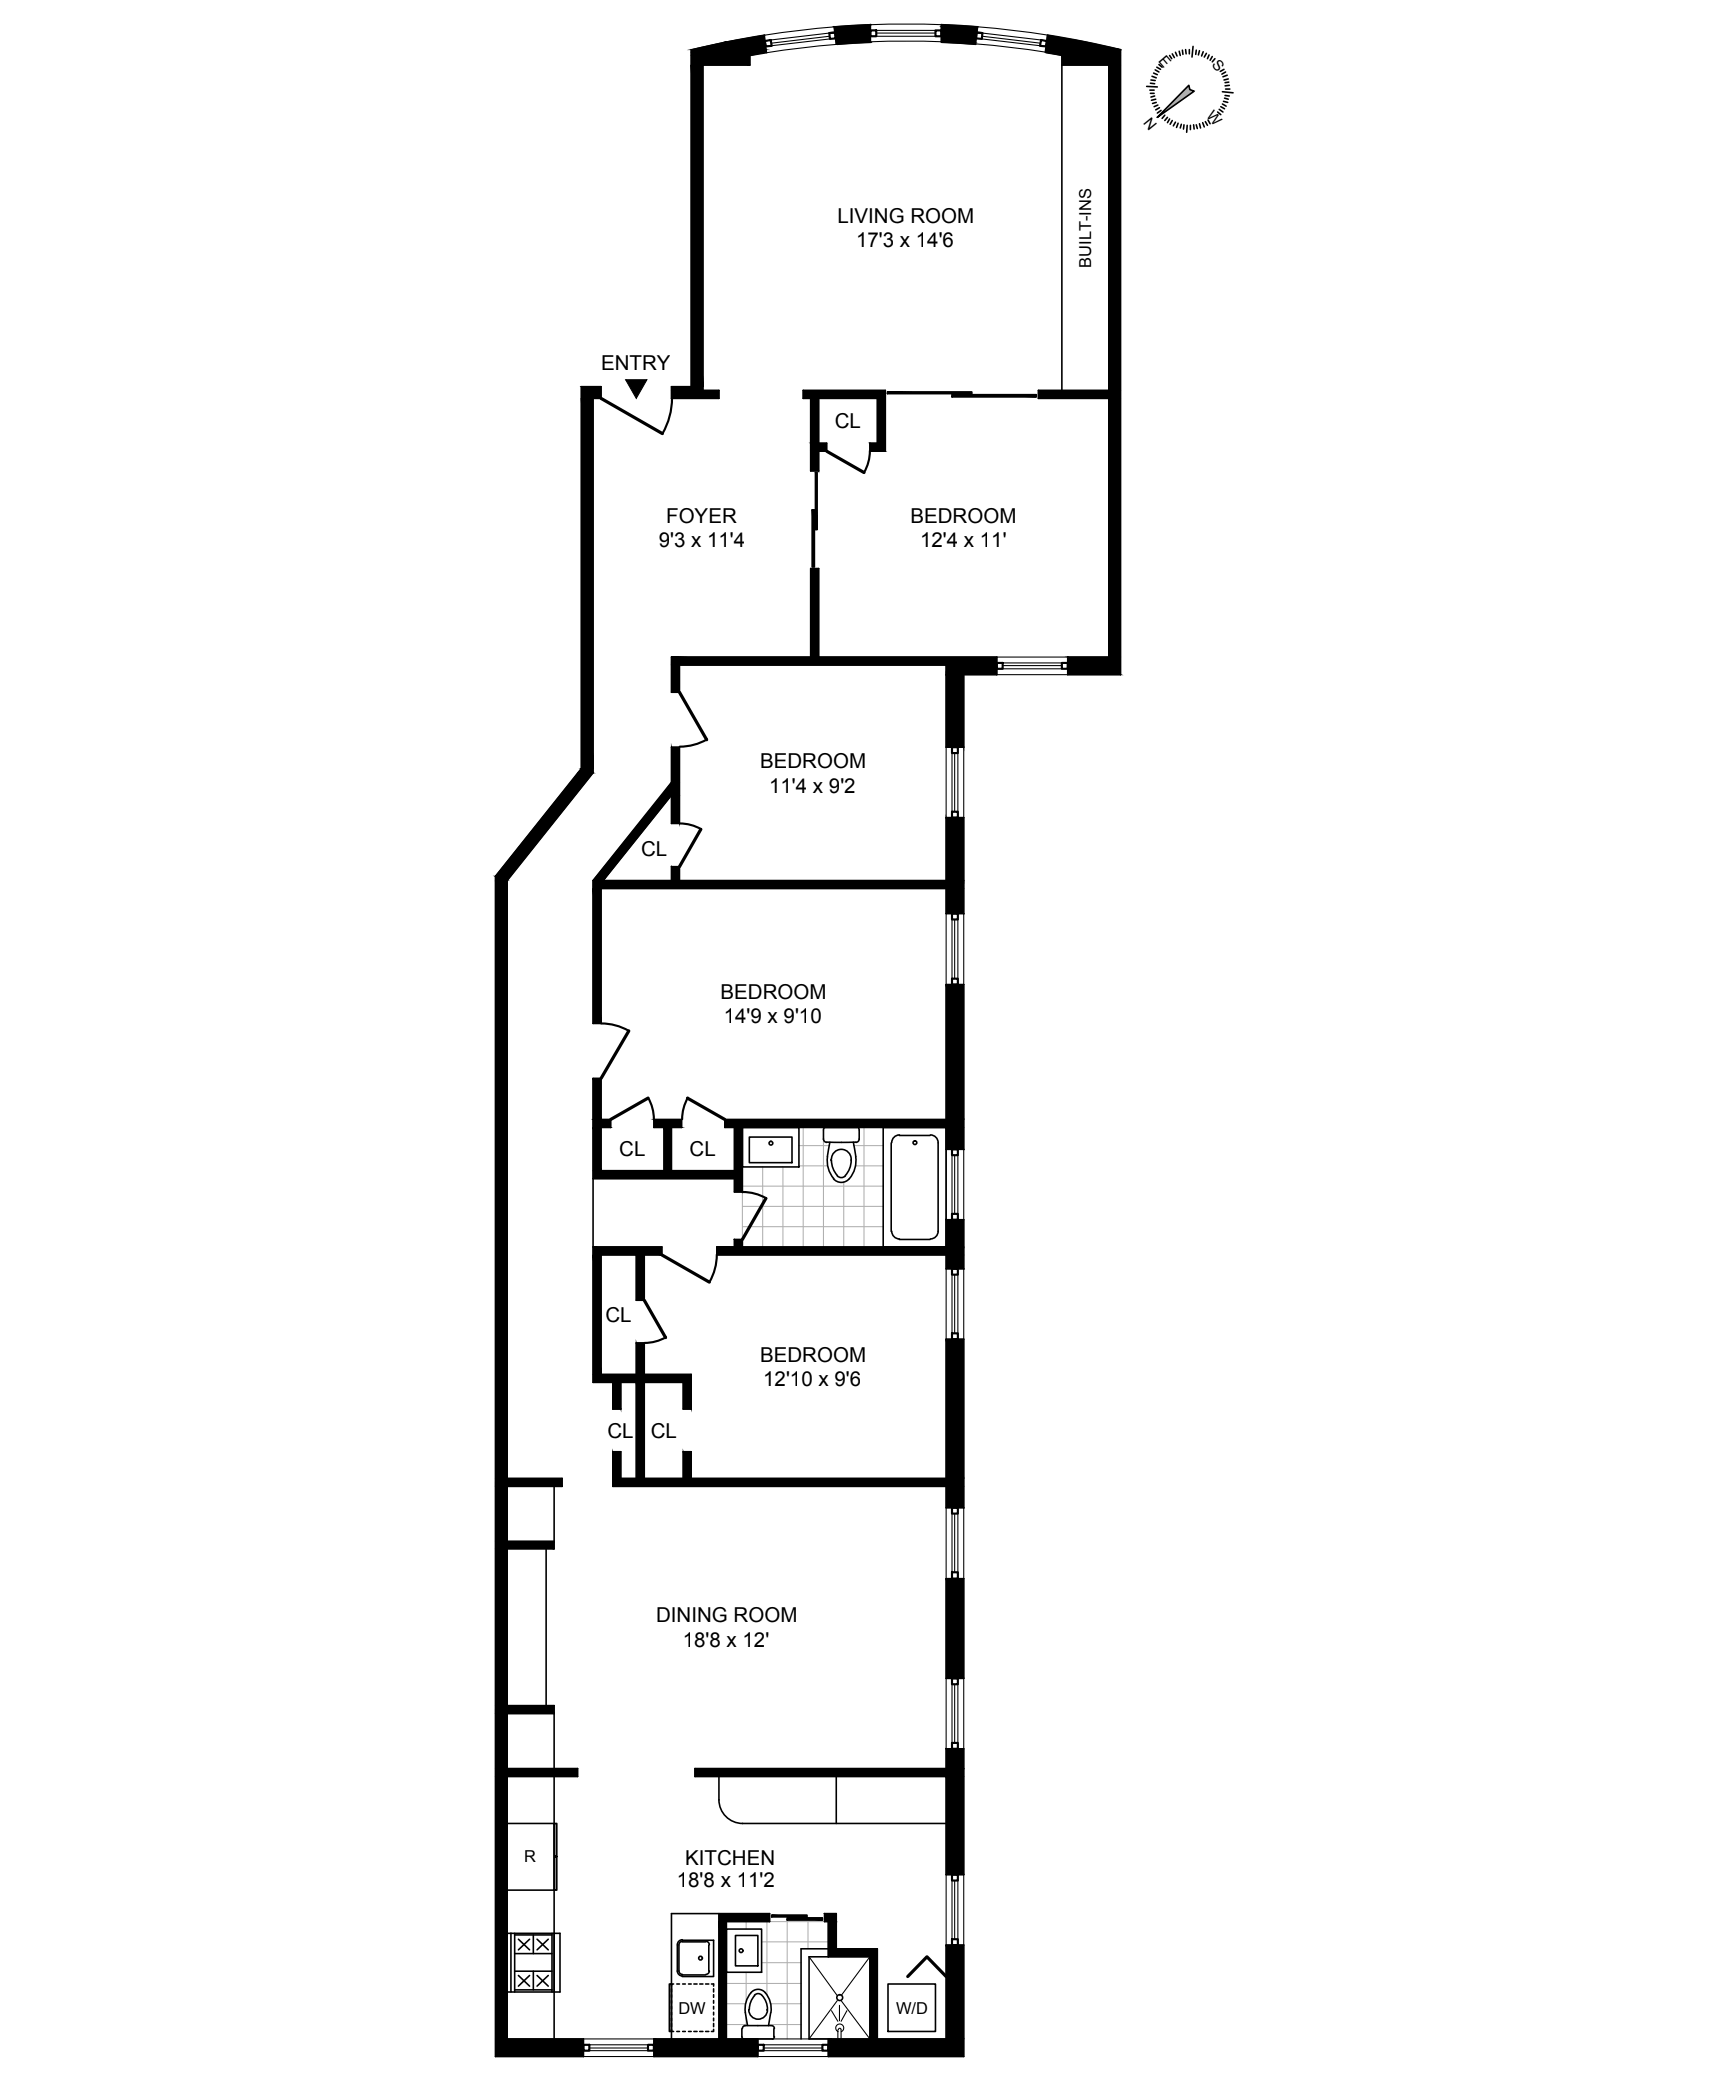 floor plan of unit 2l at 86 prospect park west